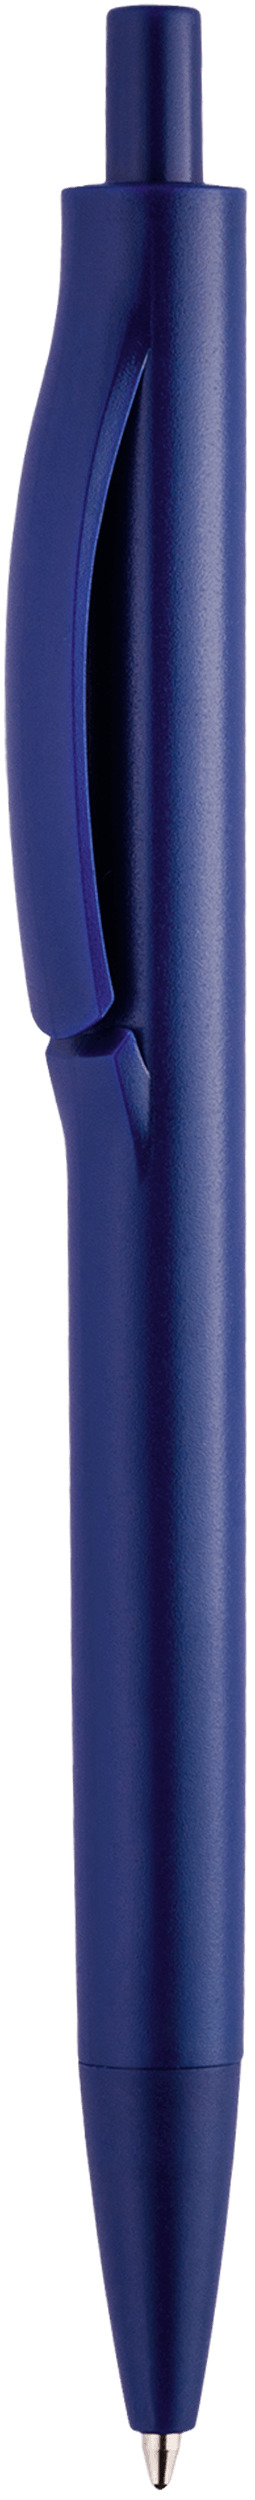 Шариковая ручка Igla Color, тёмно-синяя